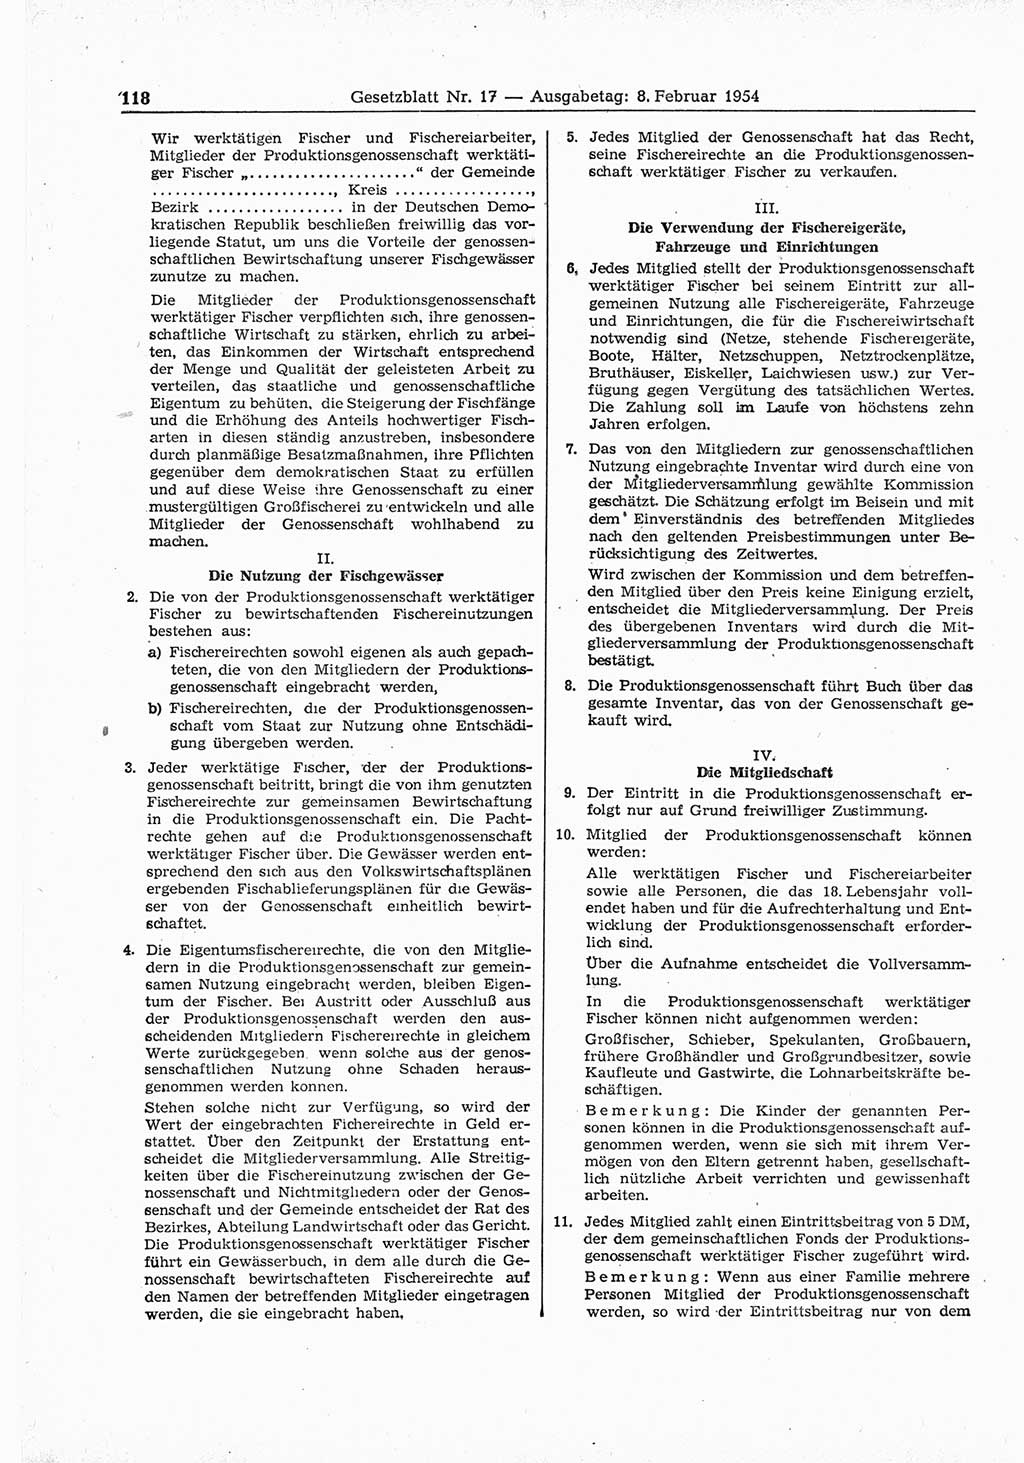 Gesetzblatt (GBl.) der Deutschen Demokratischen Republik (DDR) 1954, Seite 118 (GBl. DDR 1954, S. 118)